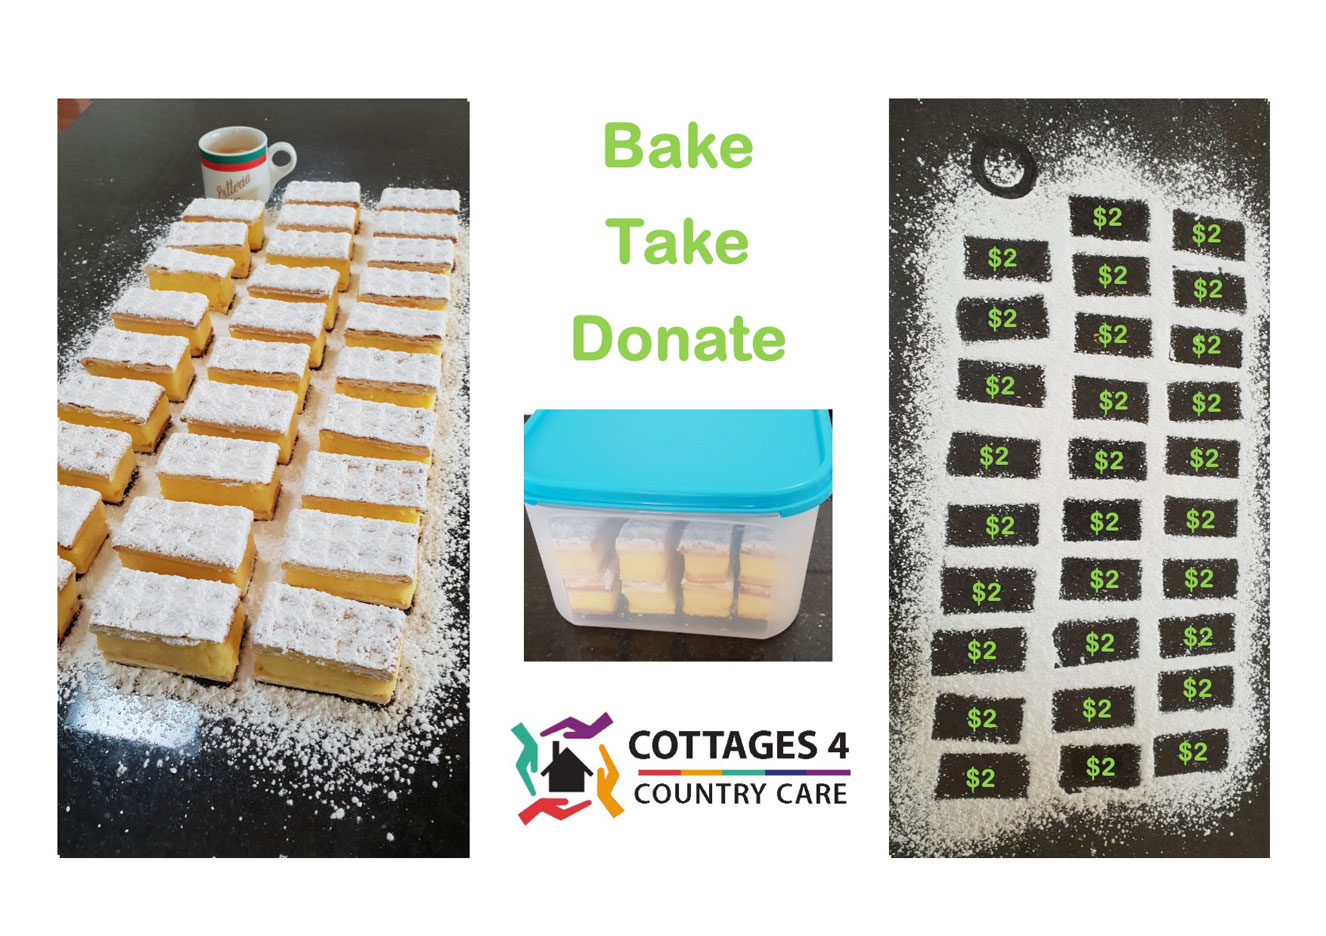 Bake Take Donate image